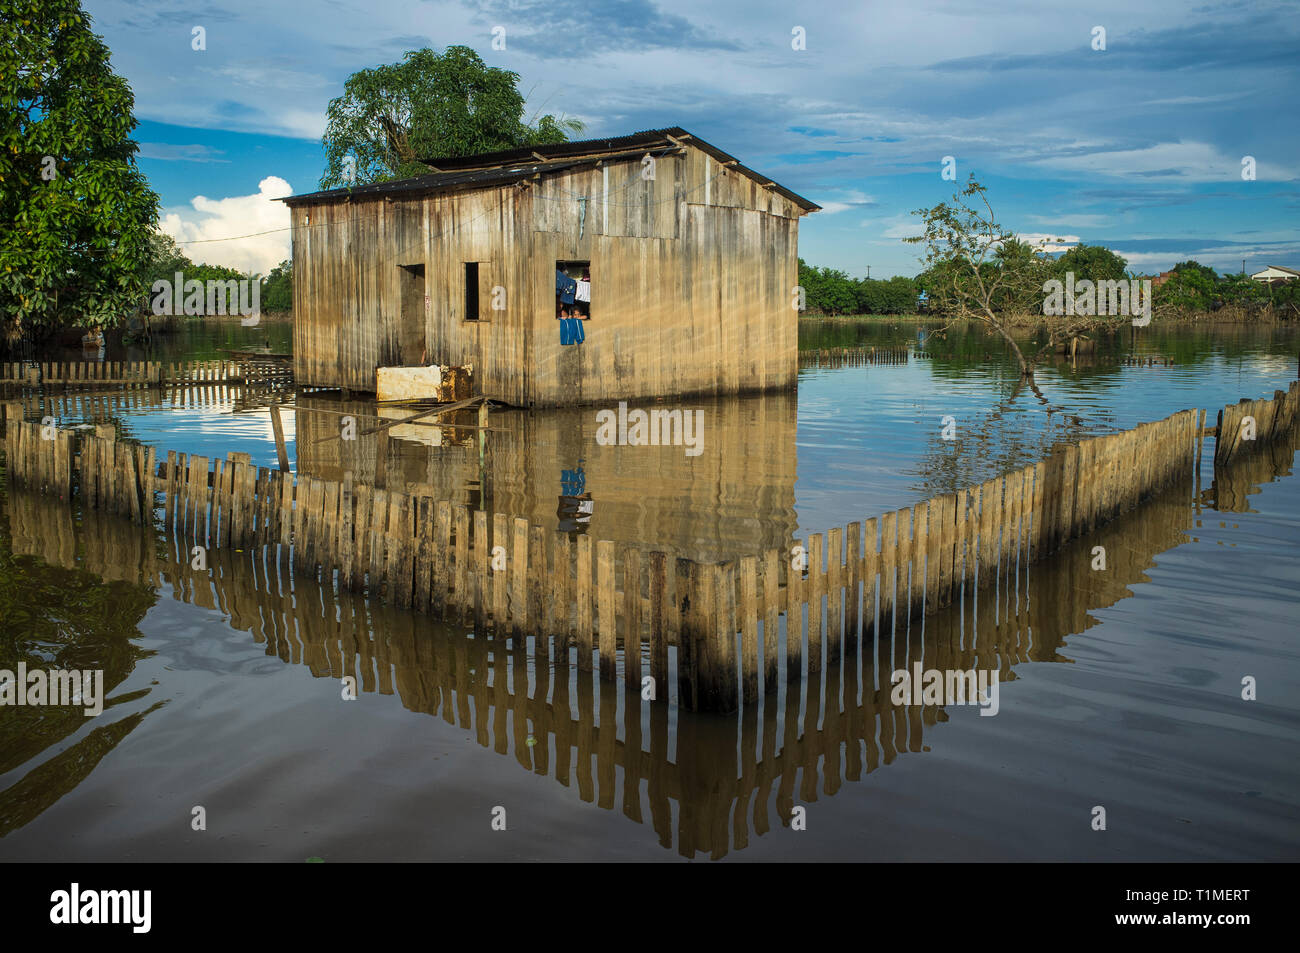 2015 Inondations en Amazonie brésilienne, Taquari, district de la ville de Rio Branco, l'état d'Acre. Les inondations ont touché des milliers de personnes dans l'Etat d'Acre, dans le nord du Brésil, depuis le 23 février 2015, lorsque certaines des rivières de l'état, en particulier l'Acre, la rivière a débordé. De plus fortes précipitations a forcé les niveaux de la rivière plus haut encore, et le 03 mars 2015, le gouvernement fédéral du Brésil a déclaré l'état d'urgence dans l'état d'Acre, où les conditions d'inondations situation a été décrite comme la pire en 132 ans. Une des zones les plus touchées est la capitale de l'état, Rio Branco, où le niveau de la rivière Acre accédons Banque D'Images